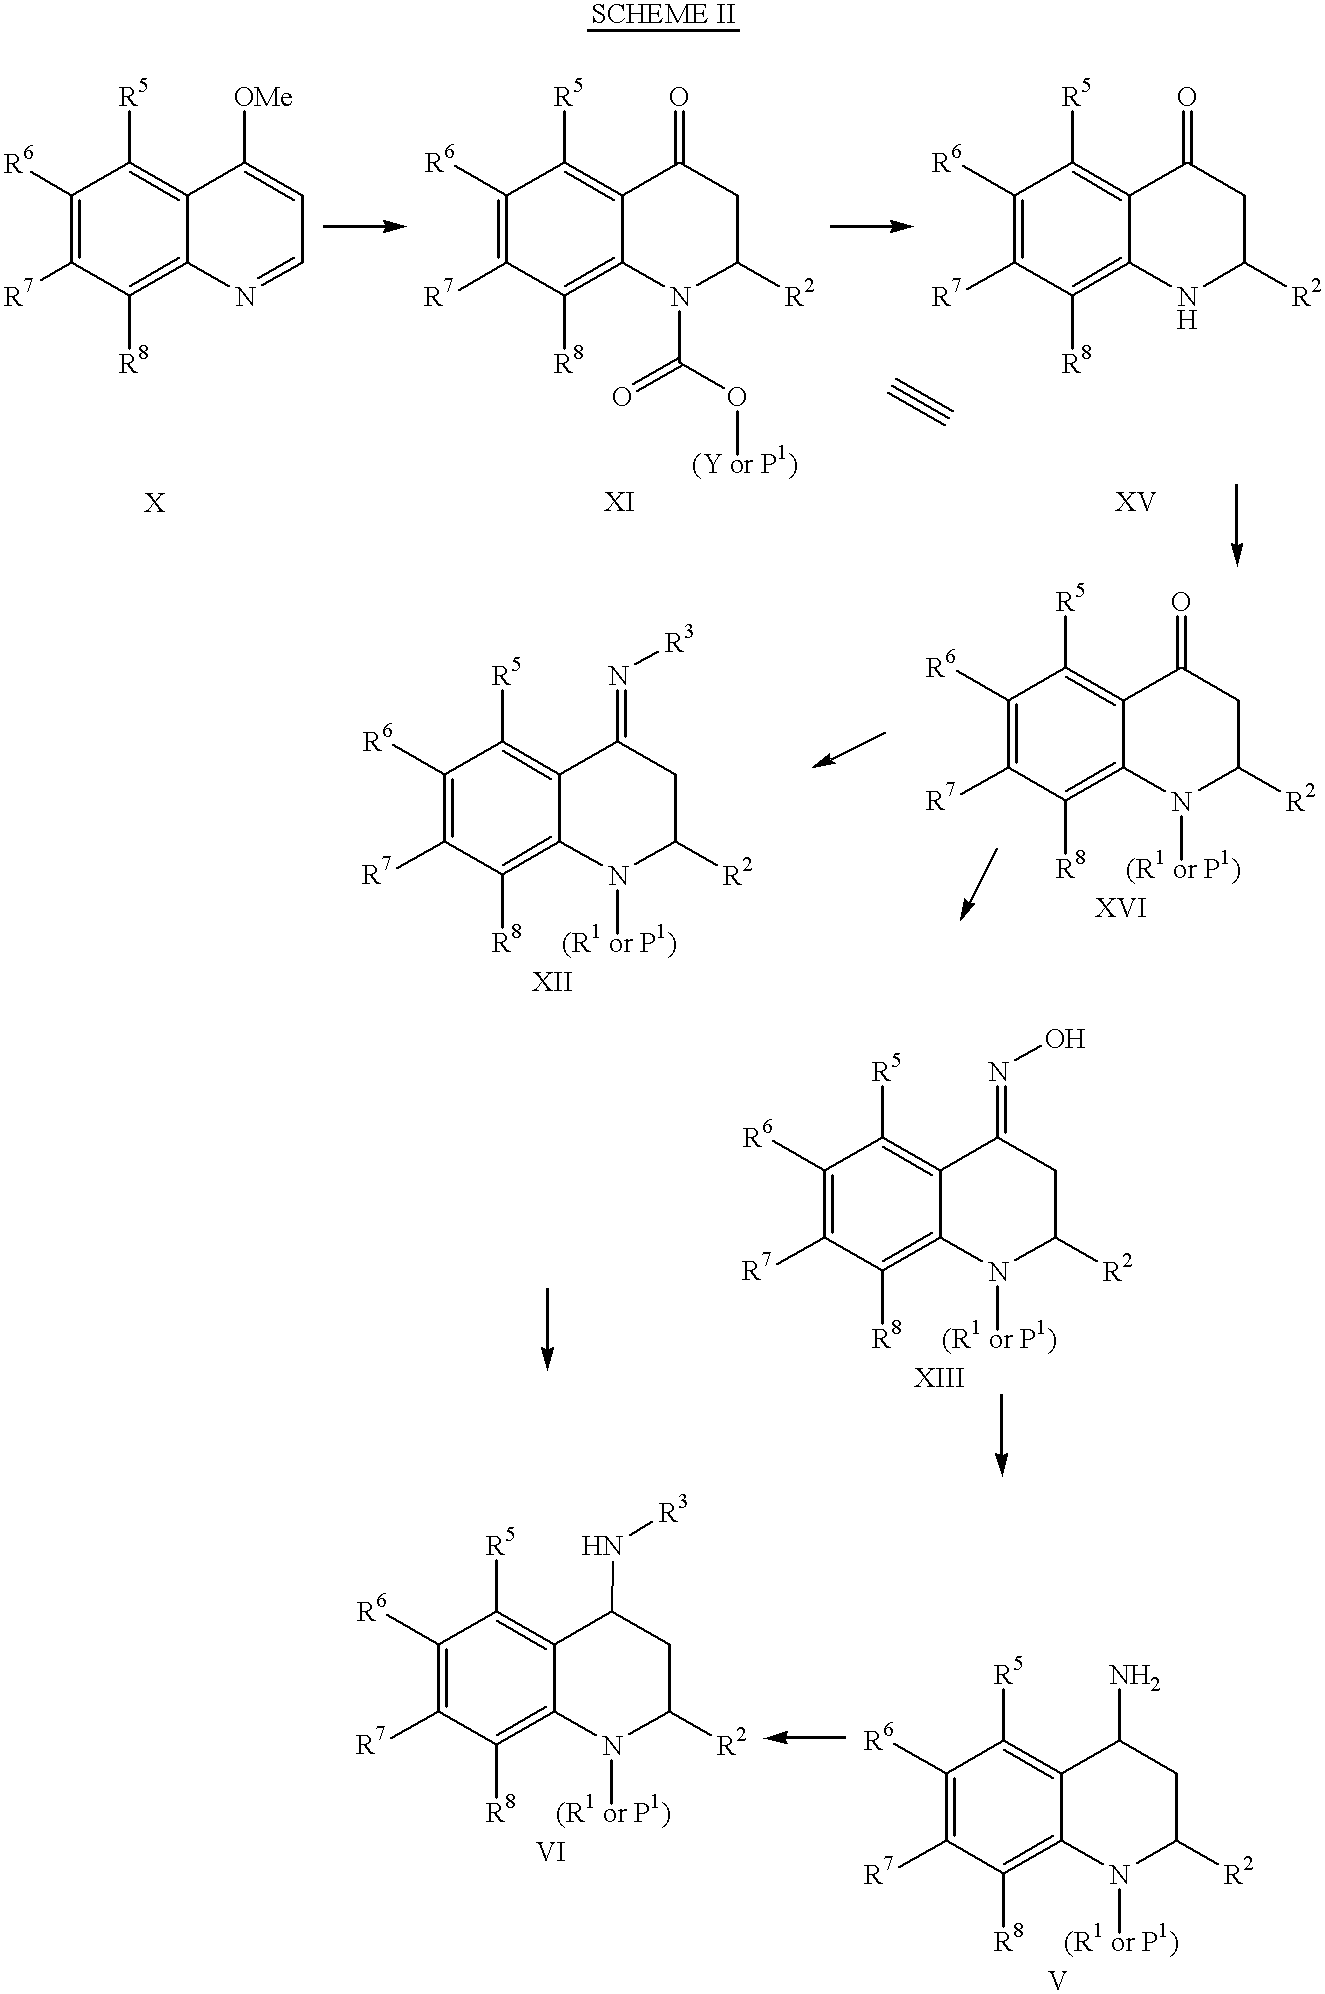 4-amino substituted-2-substituted-1,2,3,4-tetrahydroquinolines